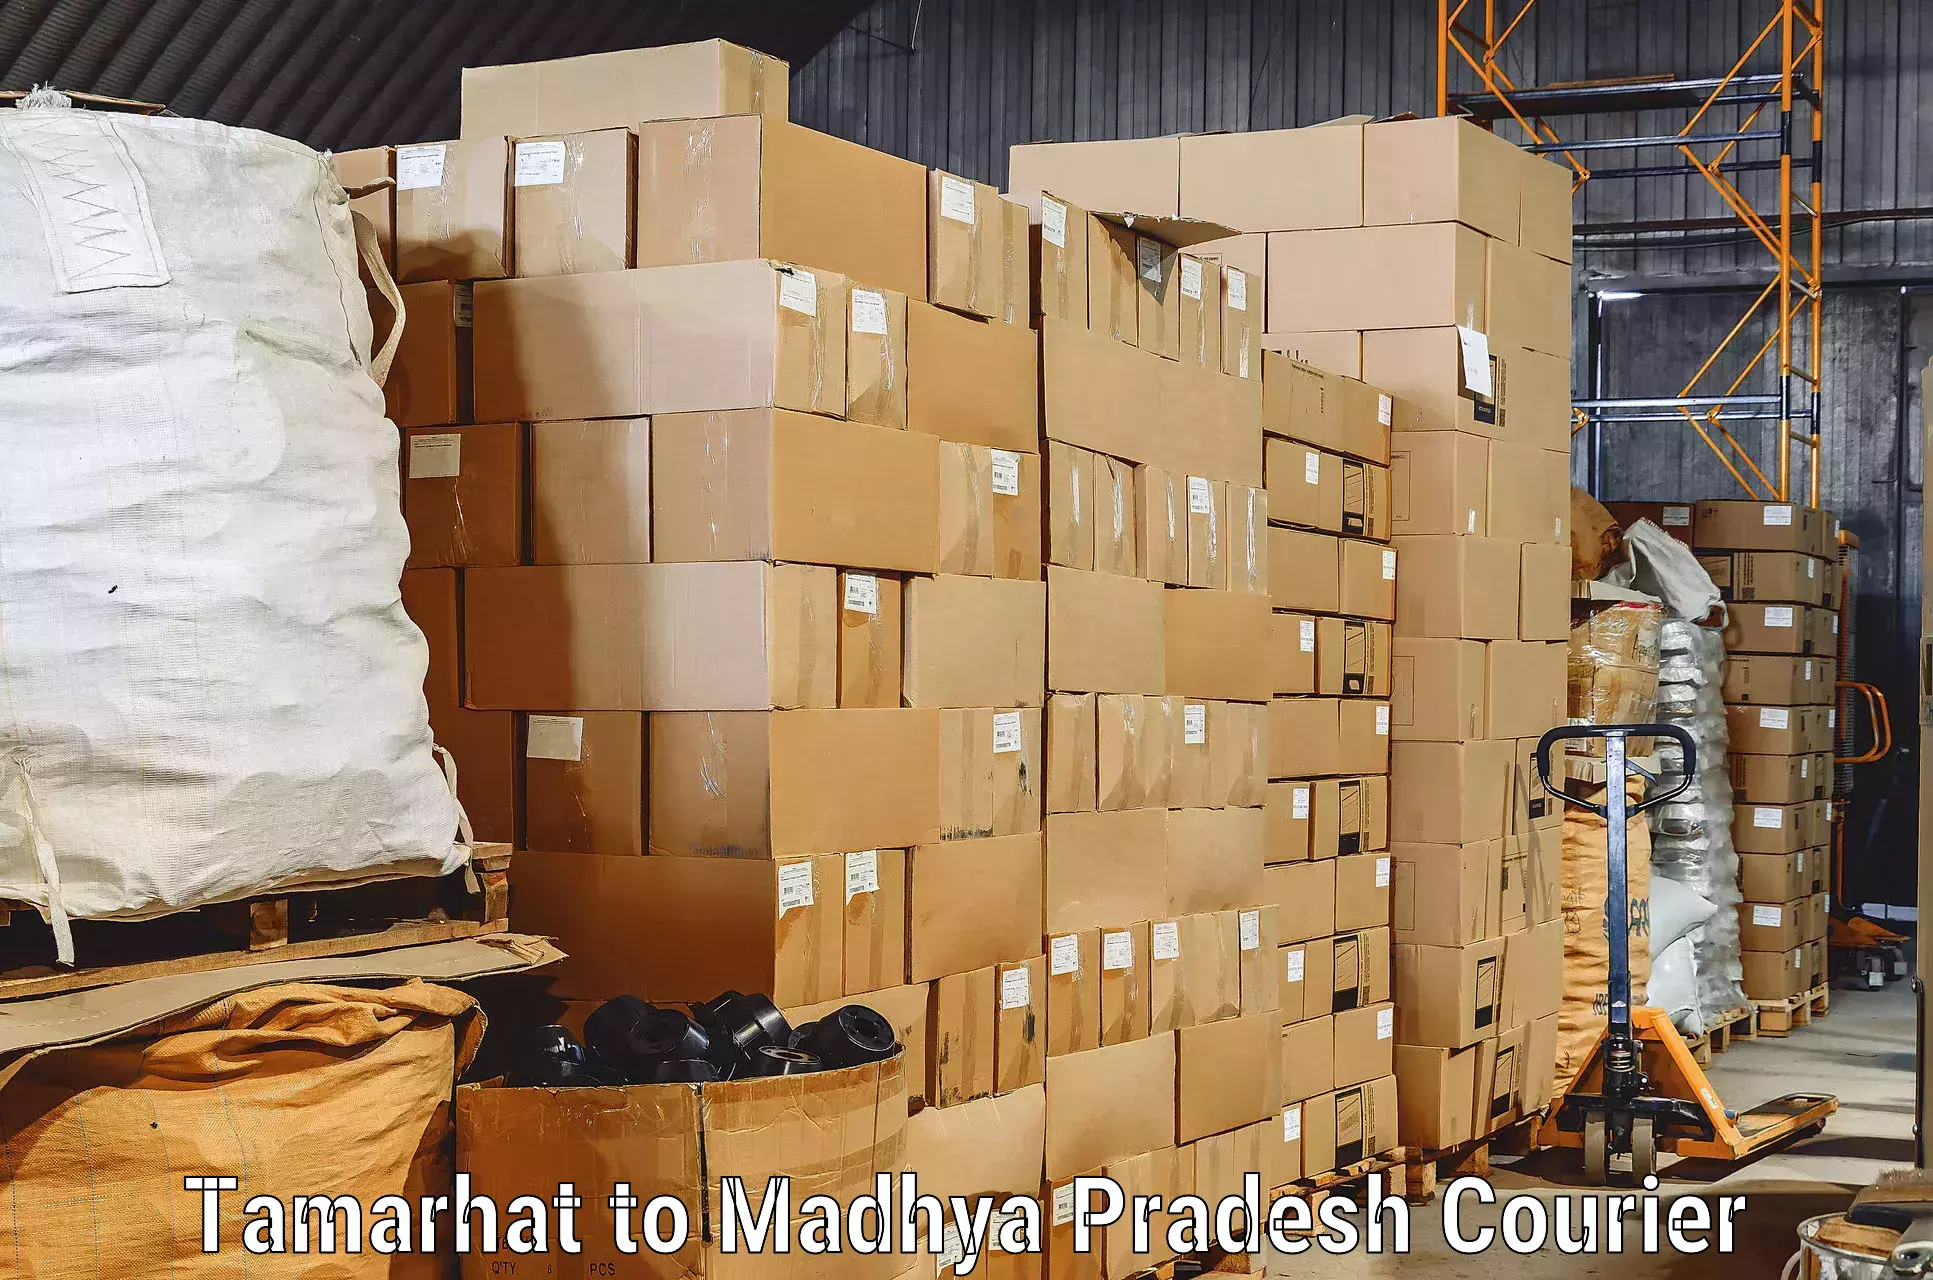 Full-service movers Tamarhat to Madhya Pradesh